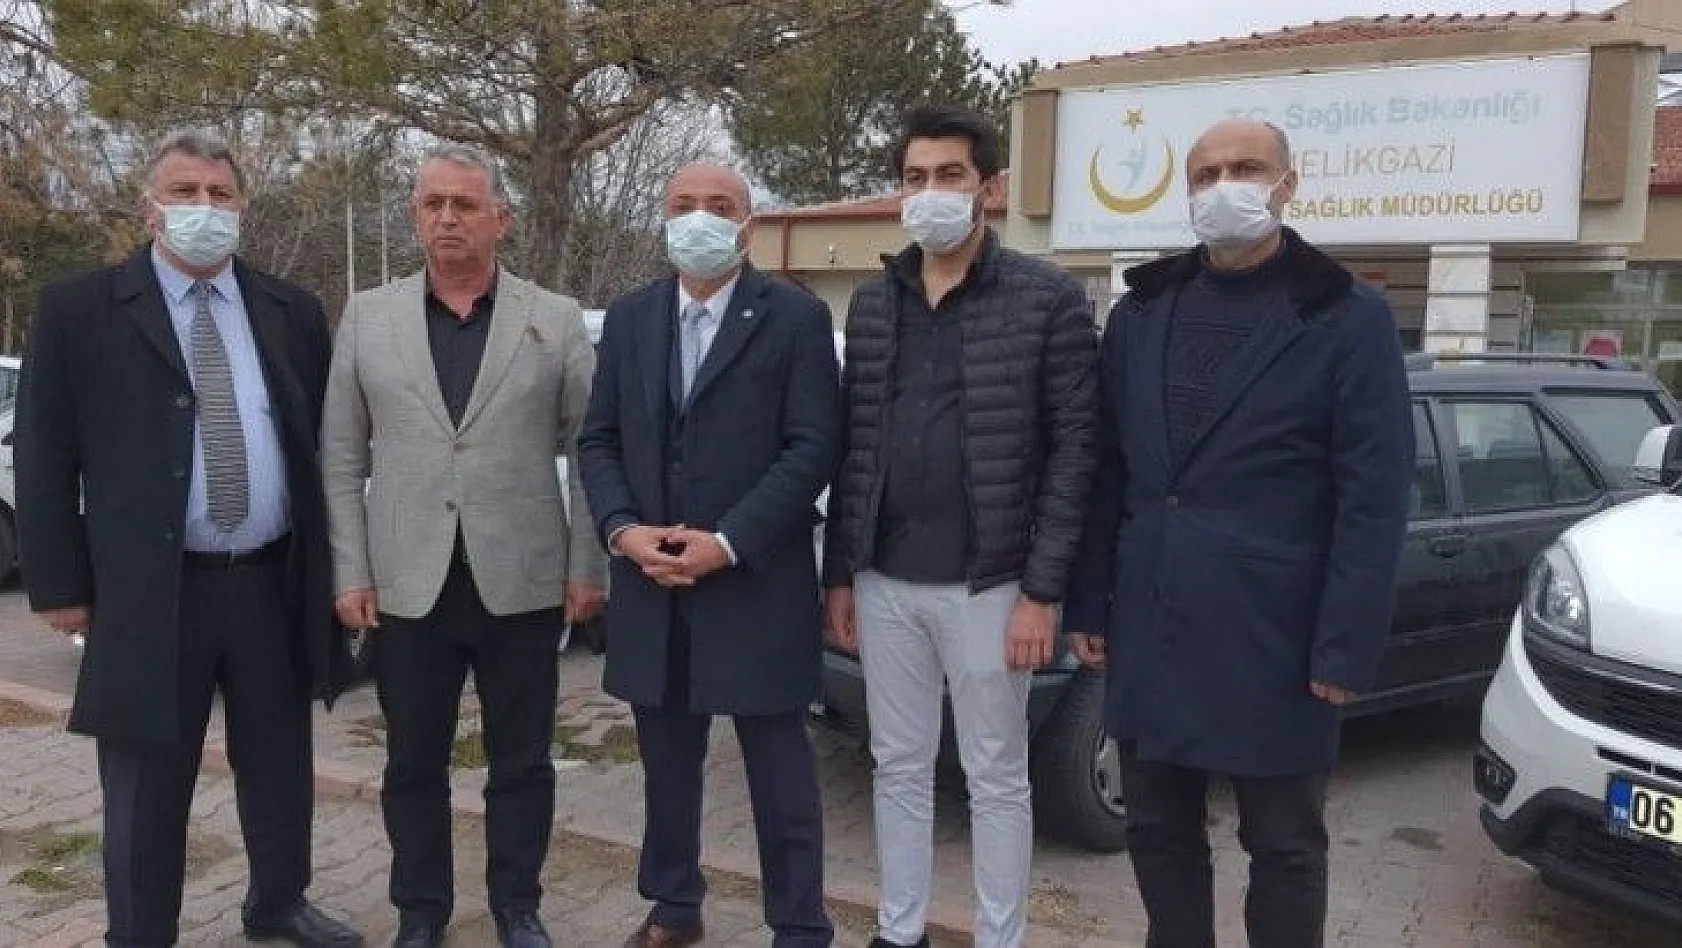 İYİ Parti'den atıl durumdaki hastane tepkisi